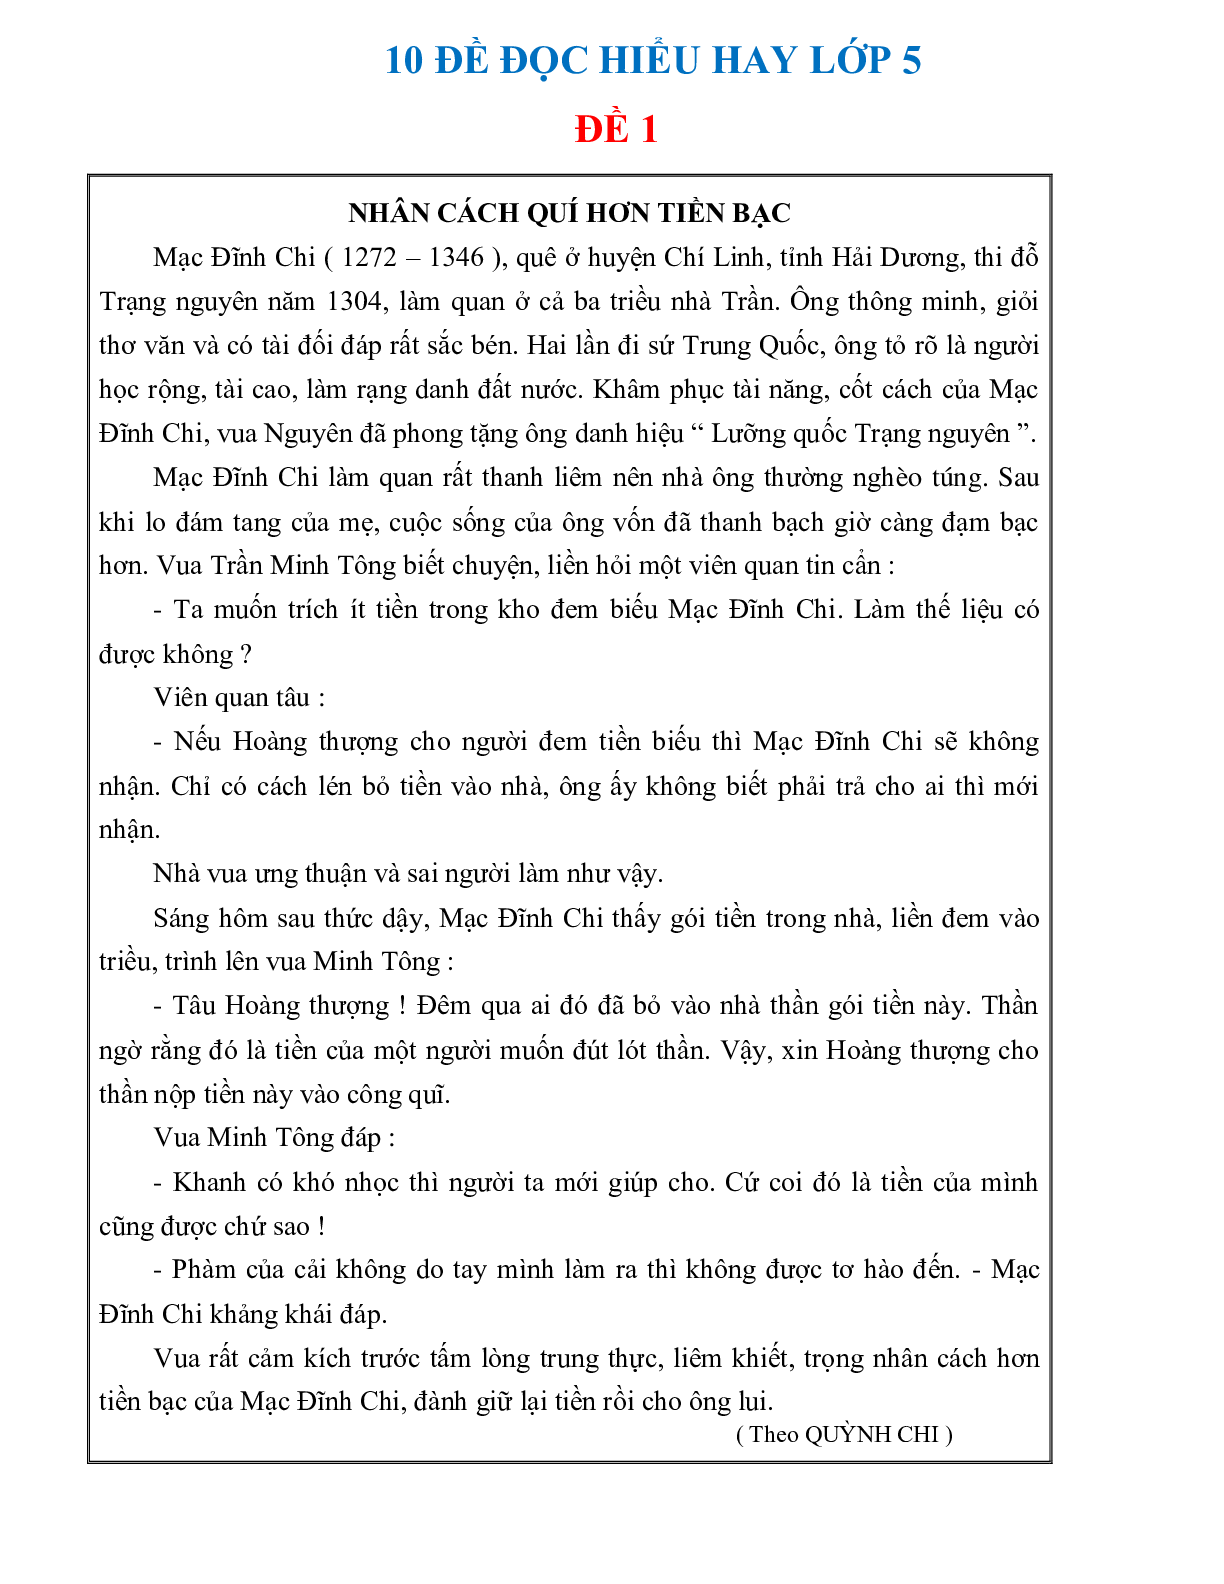 10 đề đọc hiểu hay môn Tiếng Việt lớp 5 có đáp án (trang 1)